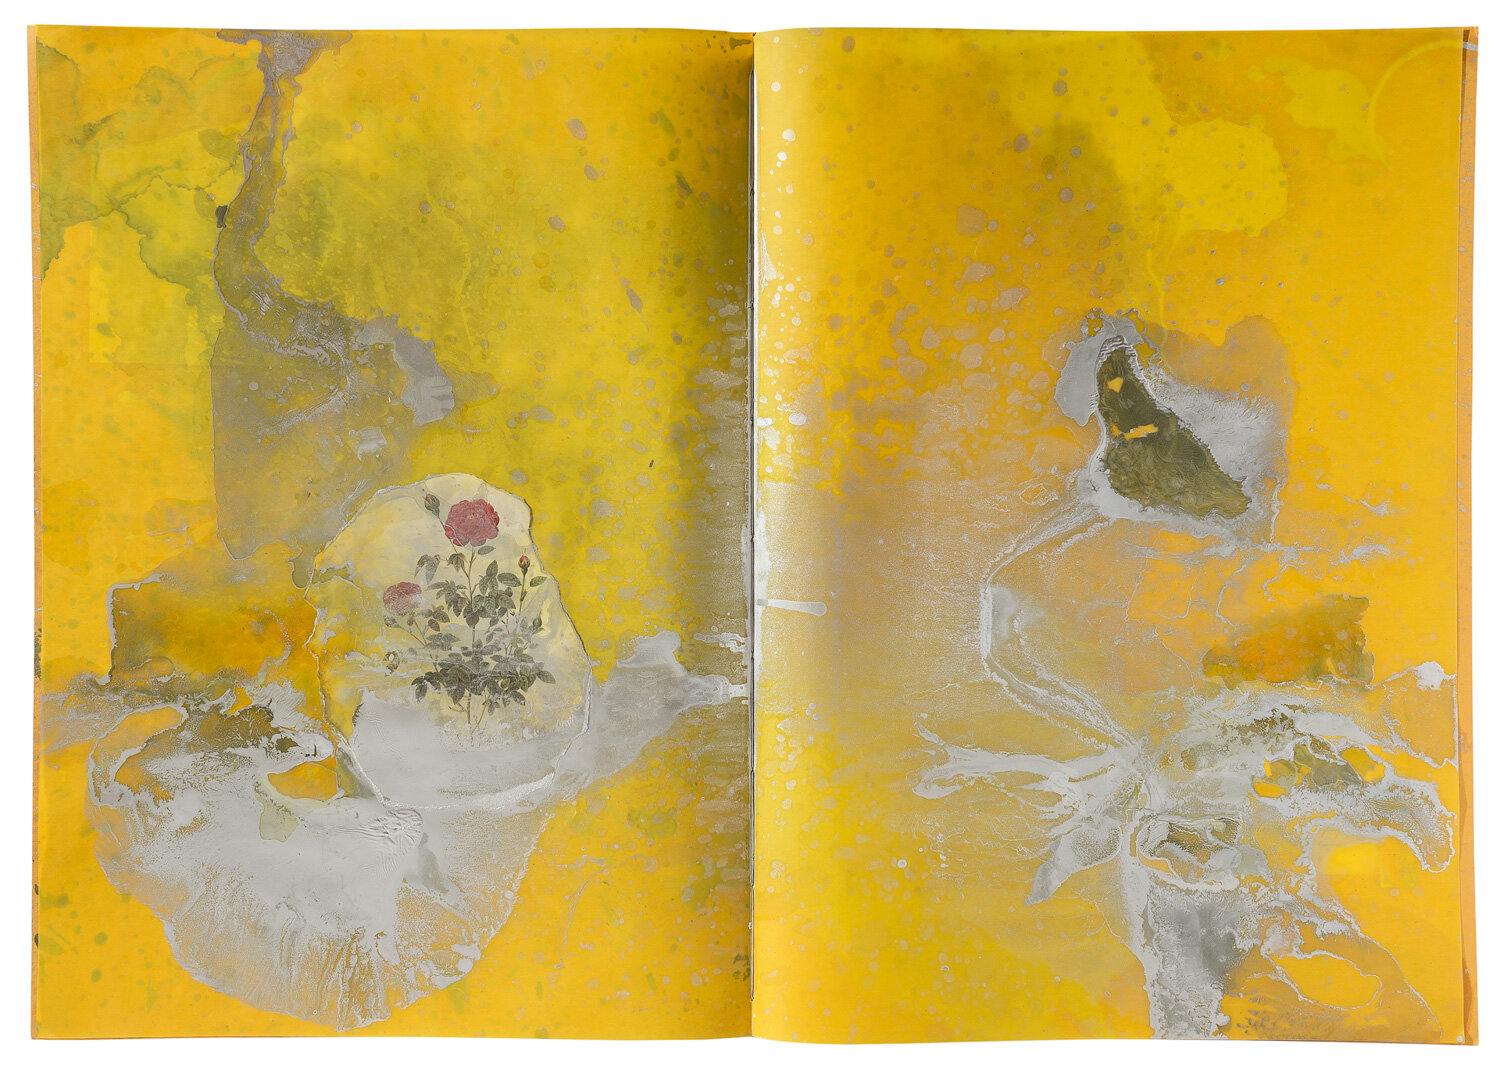 מירית צרו'ינסקי, טבע דומם זהב וכסף, ספר אמן, טכניקה מעורבת על נייר, 2016 | קרדיט צילום: יורם רשף